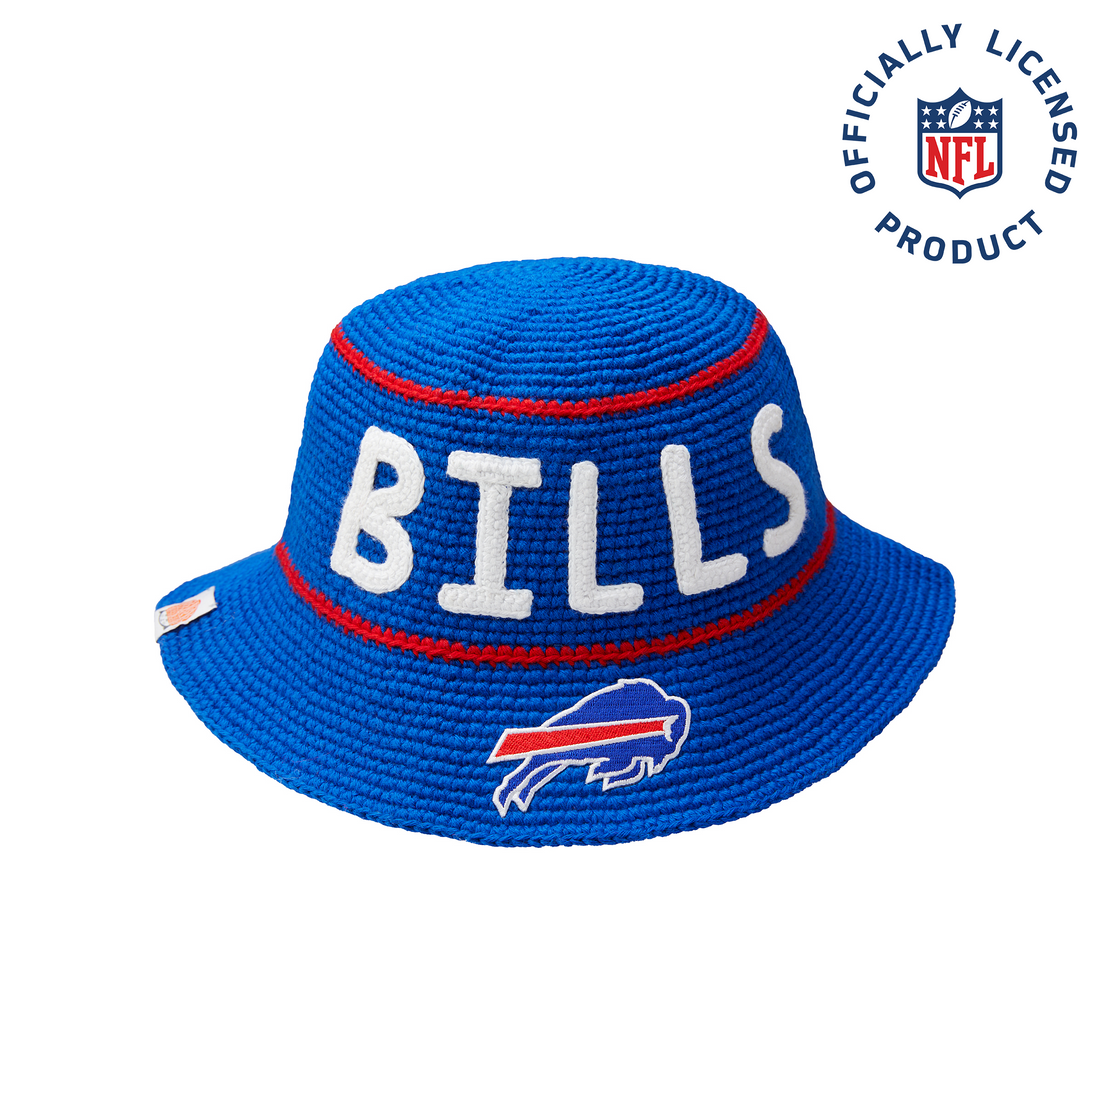 The Bills NFL Bucket Hat